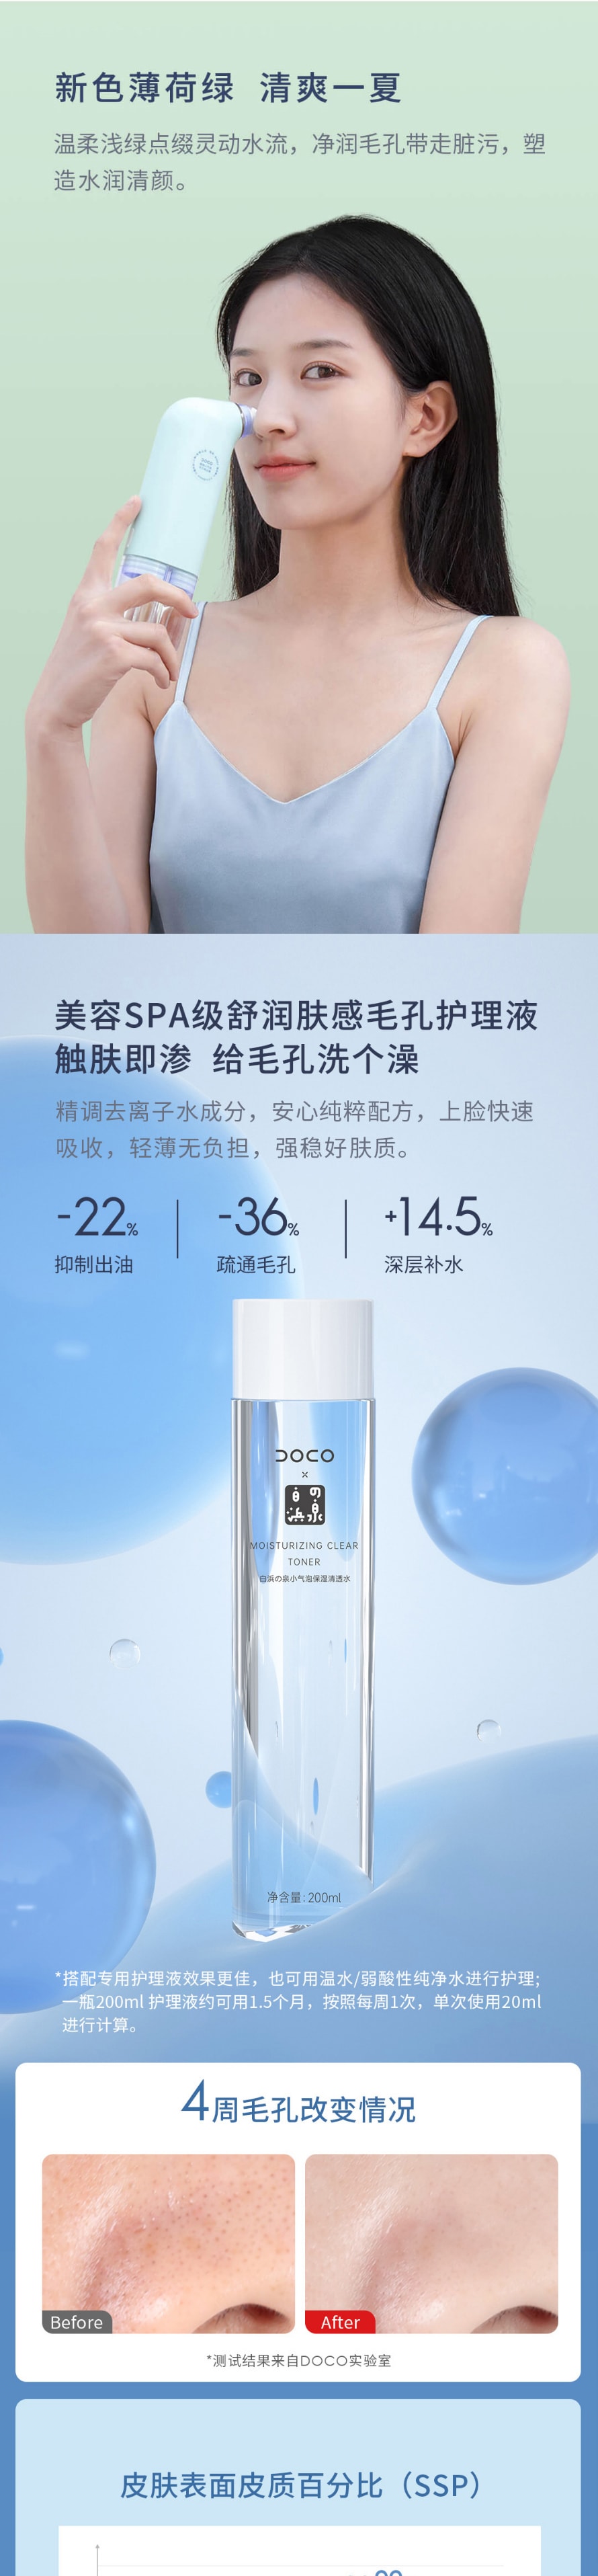 【中国直邮】小米有品 DOCO 超微小气泡毛孔吸尘器黑头仪 蓝光版